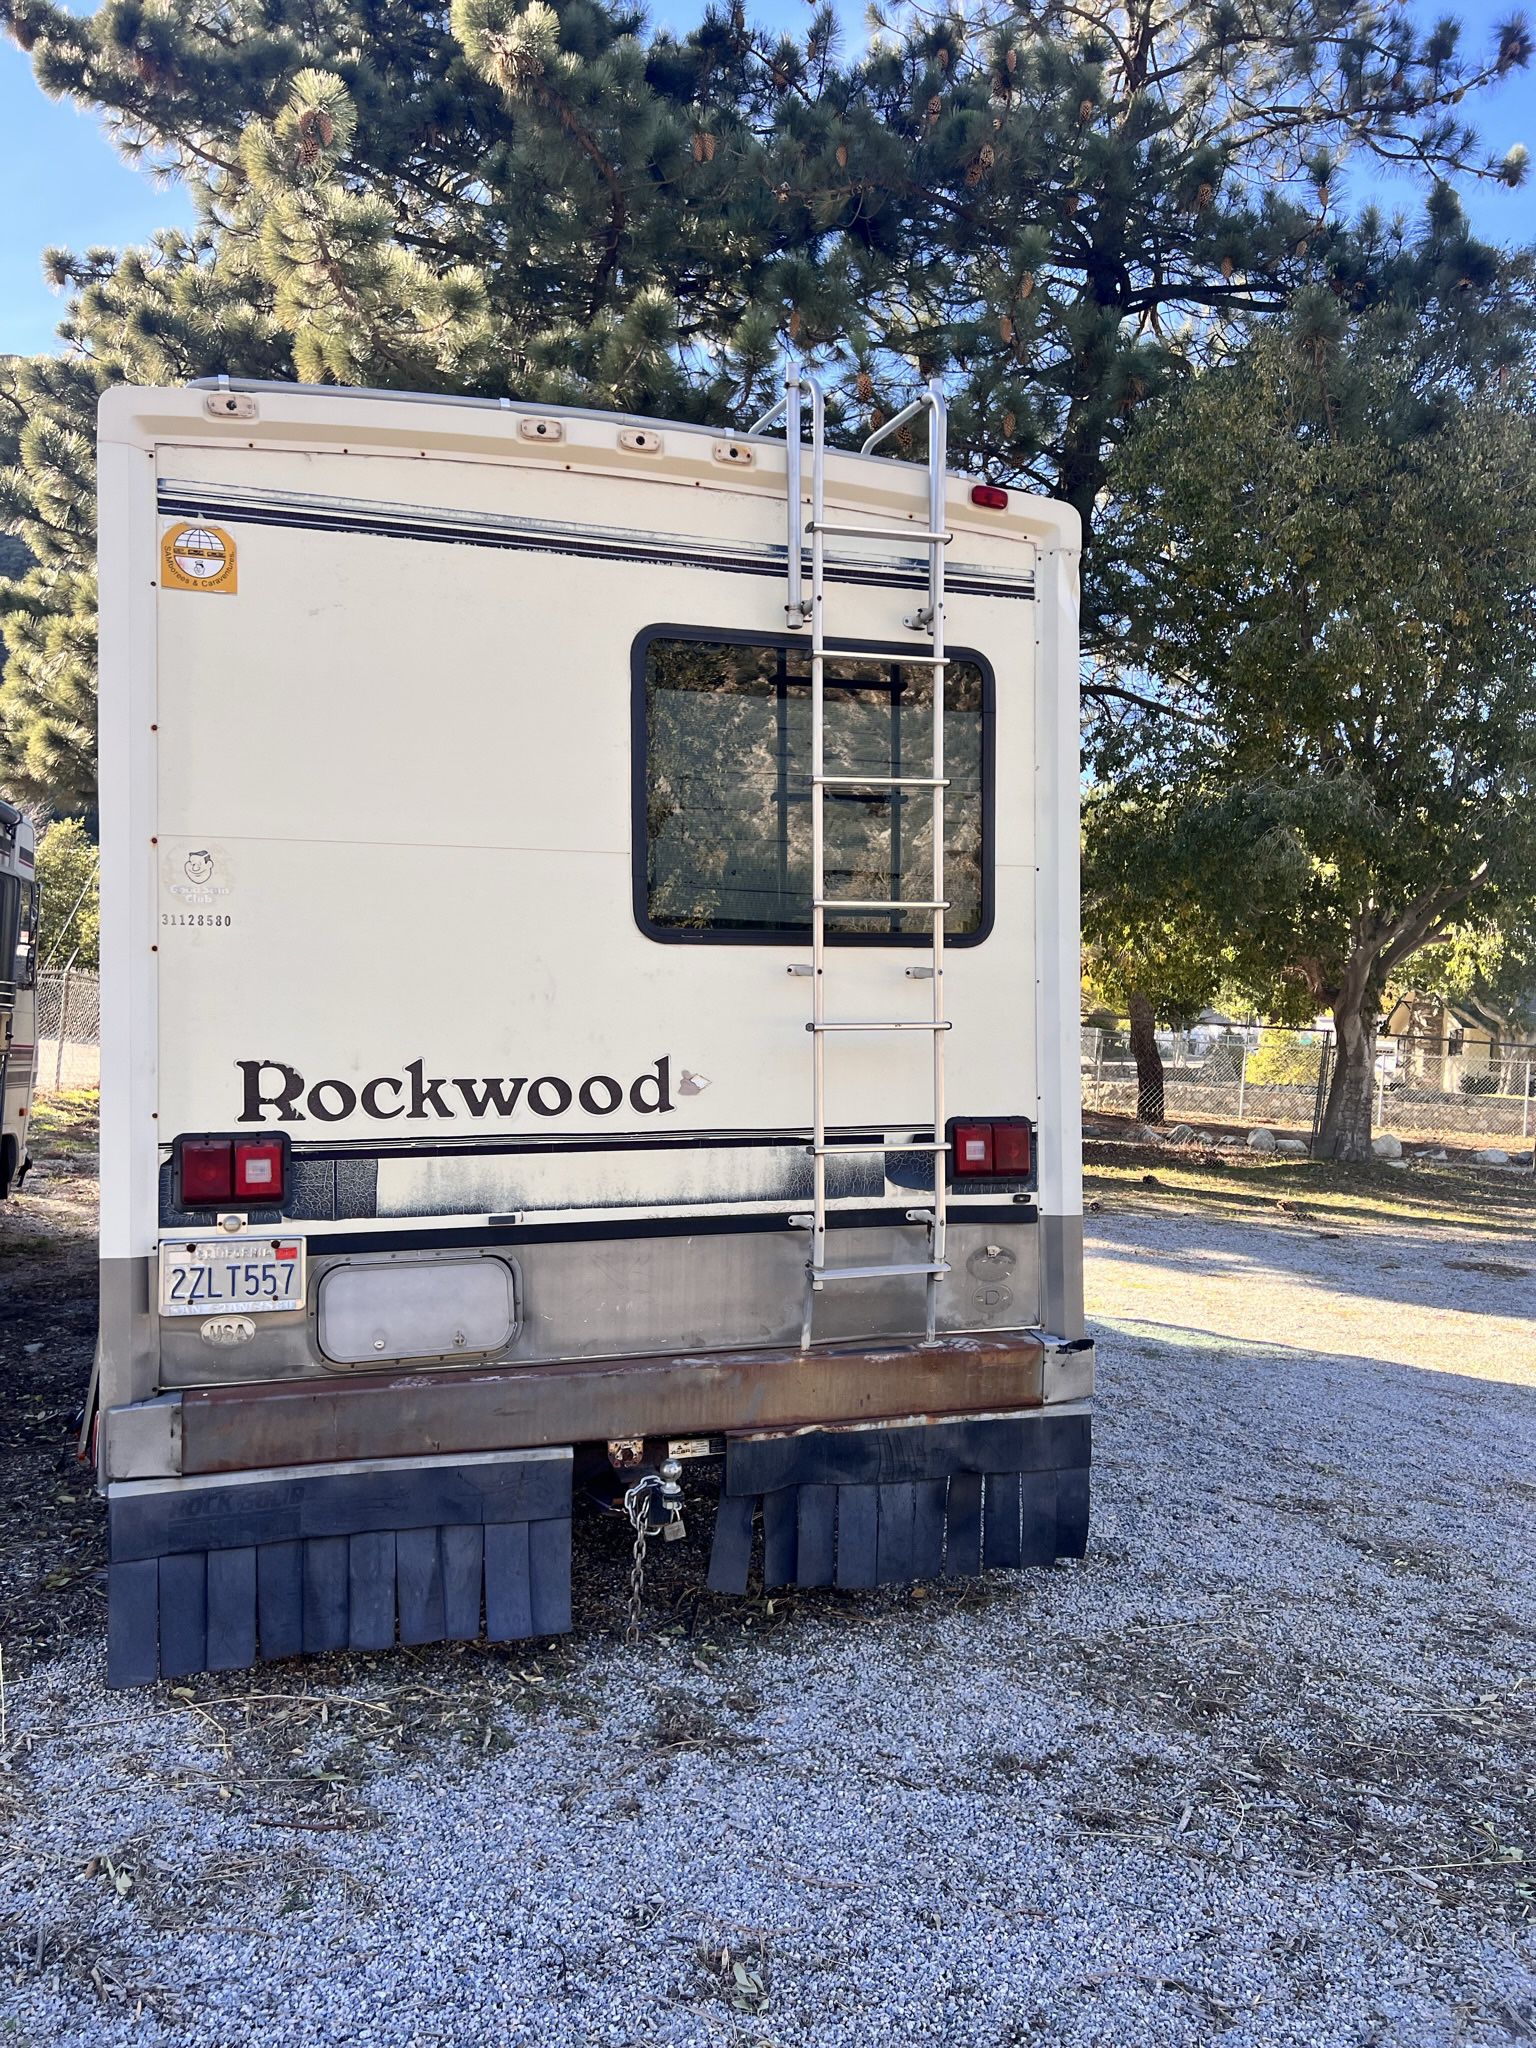 1992 Rockwood Rockwoood For Sale In Redlands Ca Offerup